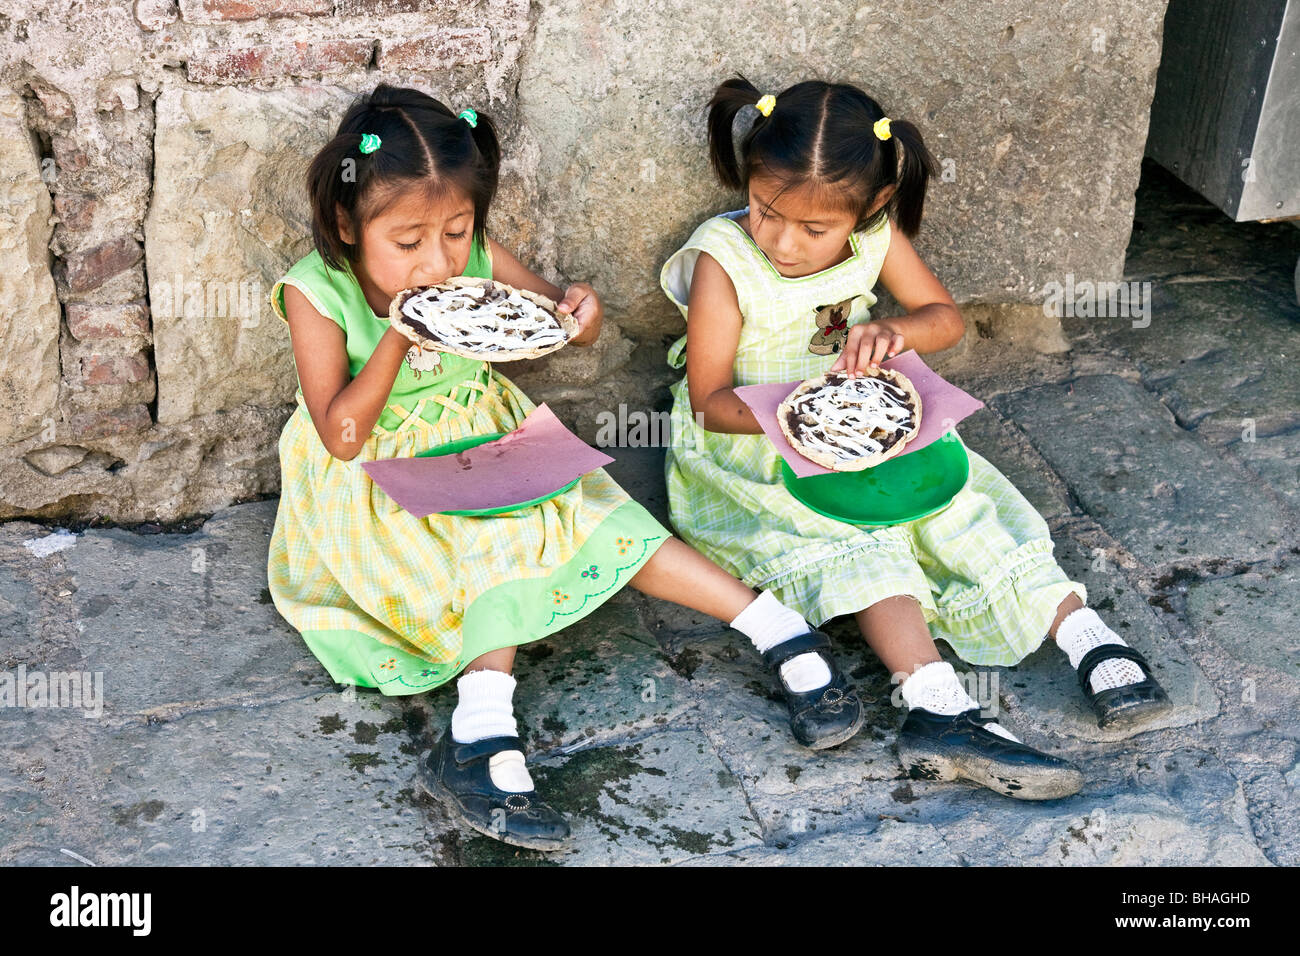 Dos niñas mexicanas pequeñas en bonitos vestidos - cuadros & rayados Merceditas sentarse en la acera y disfrutar del almuerzo trata de tacos idénticos Foto de stock